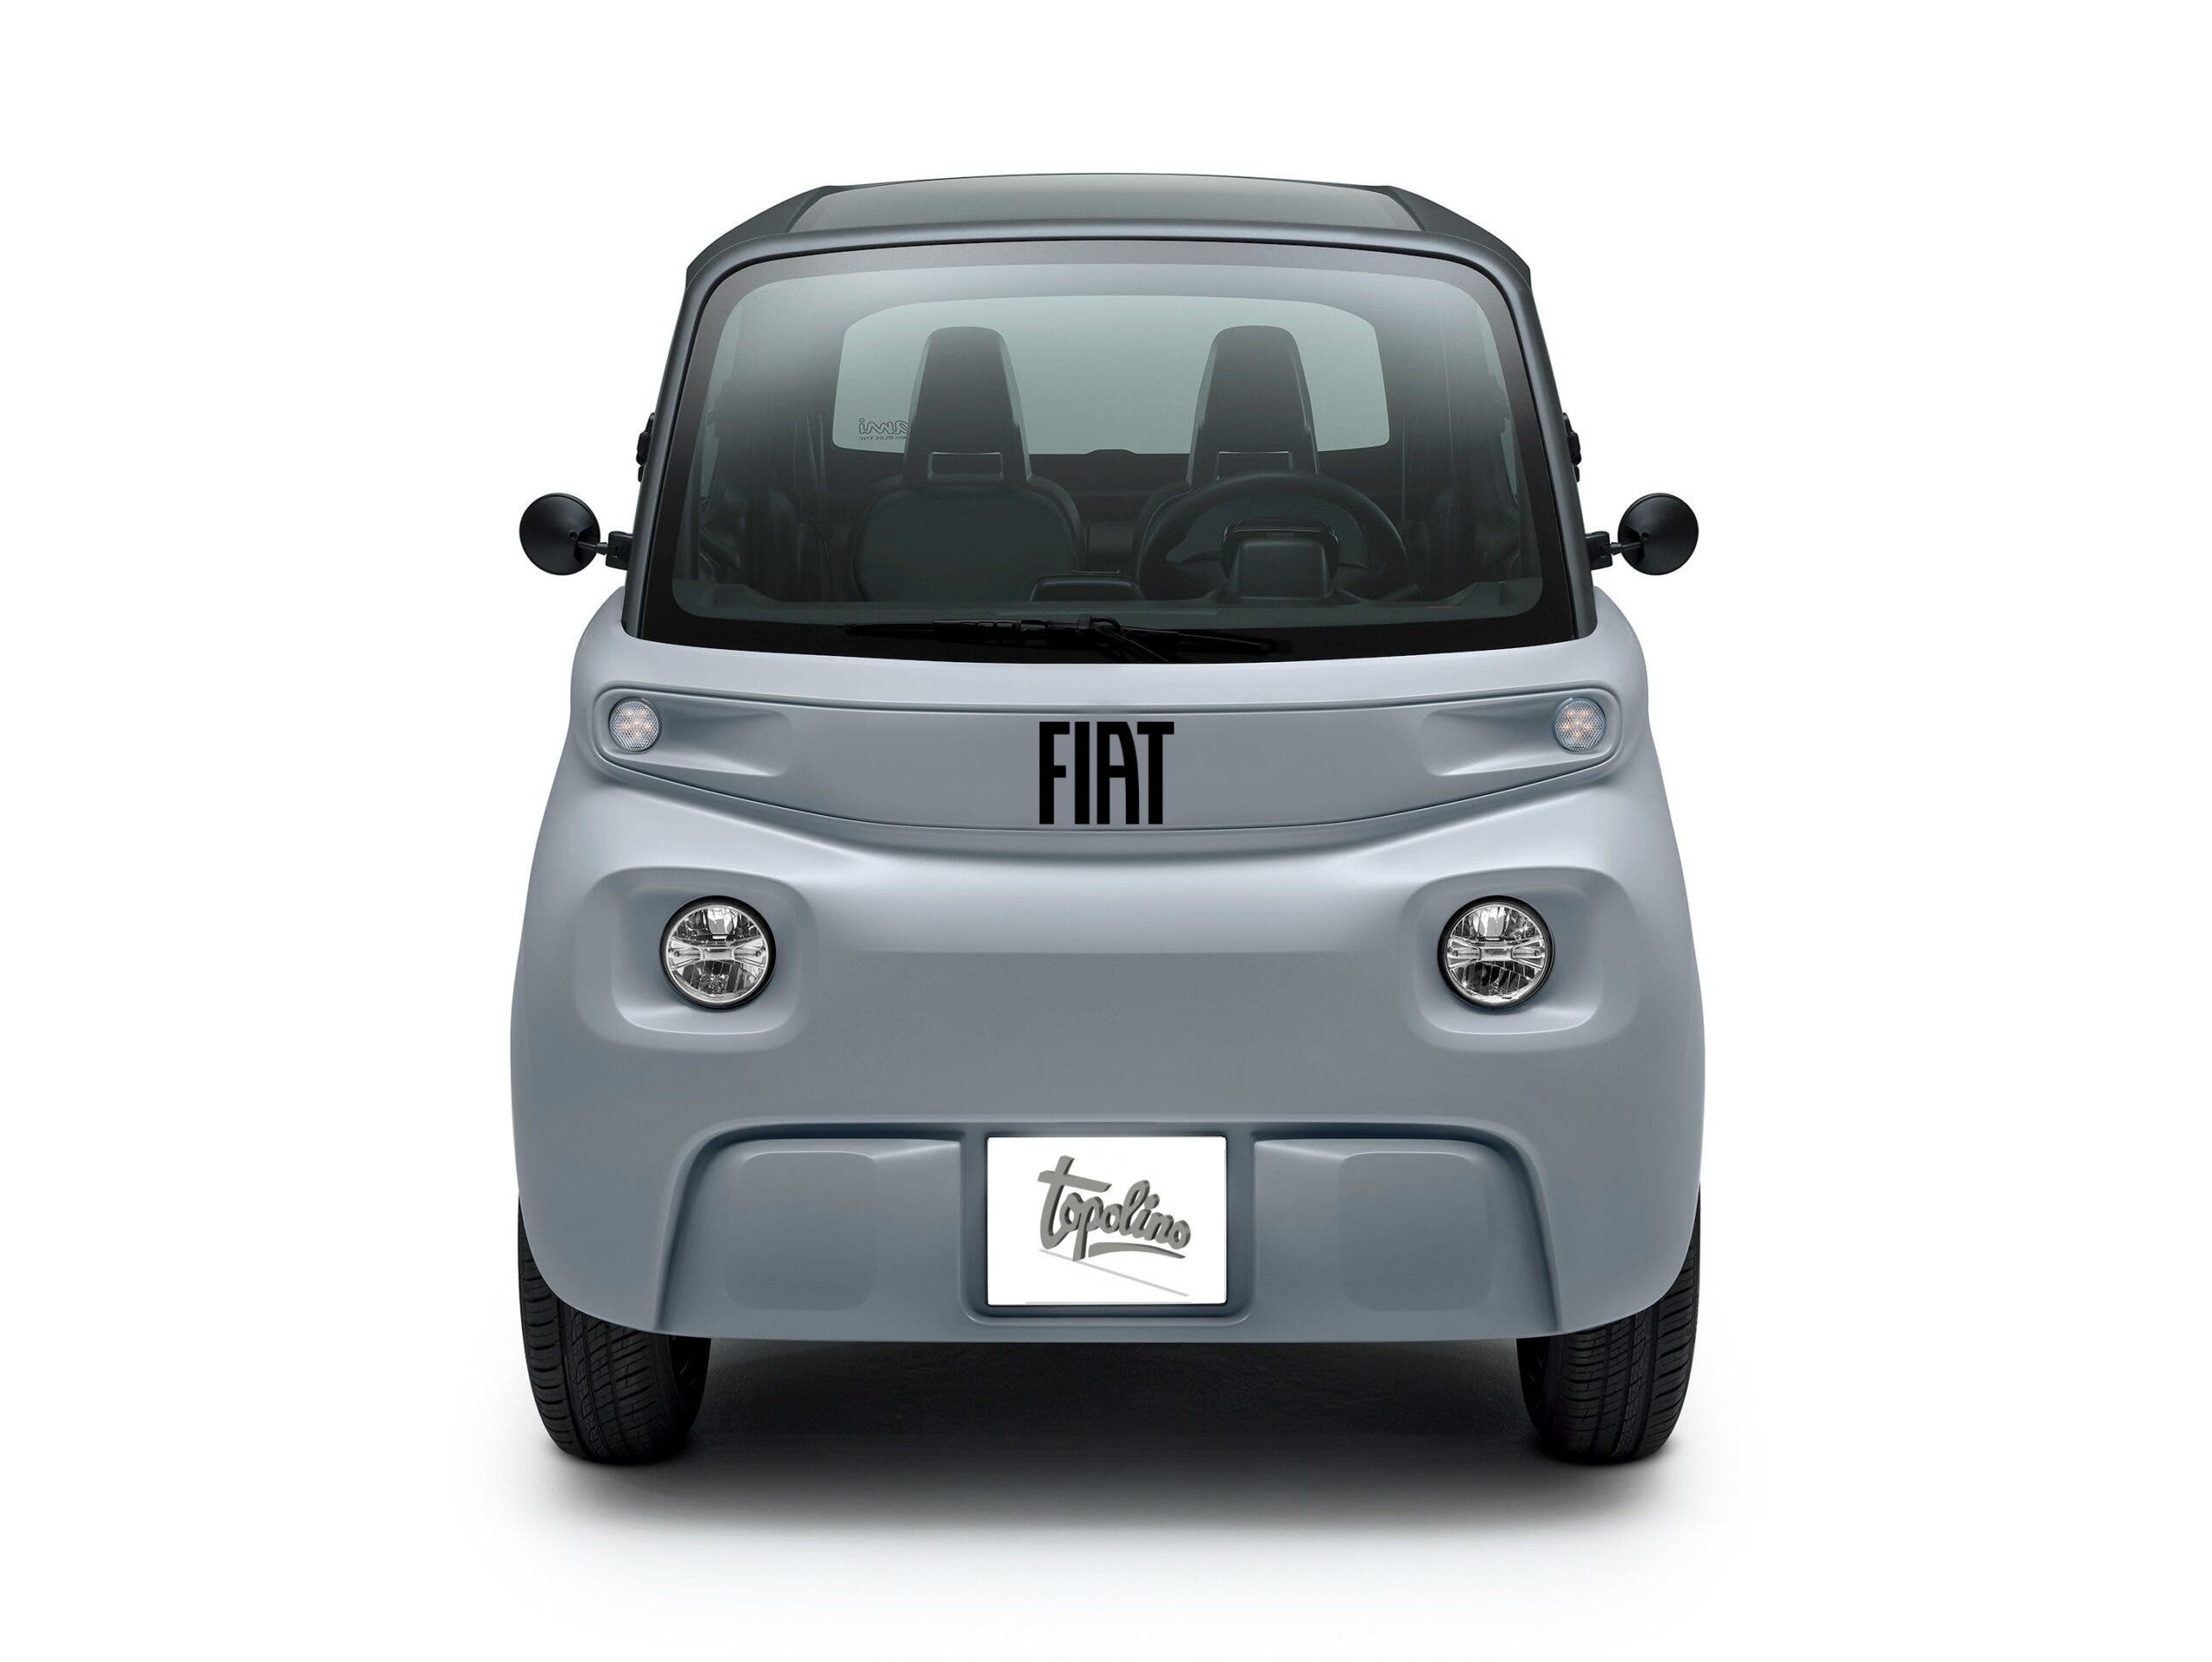 The new Fiat Topolino: the car will already be ready